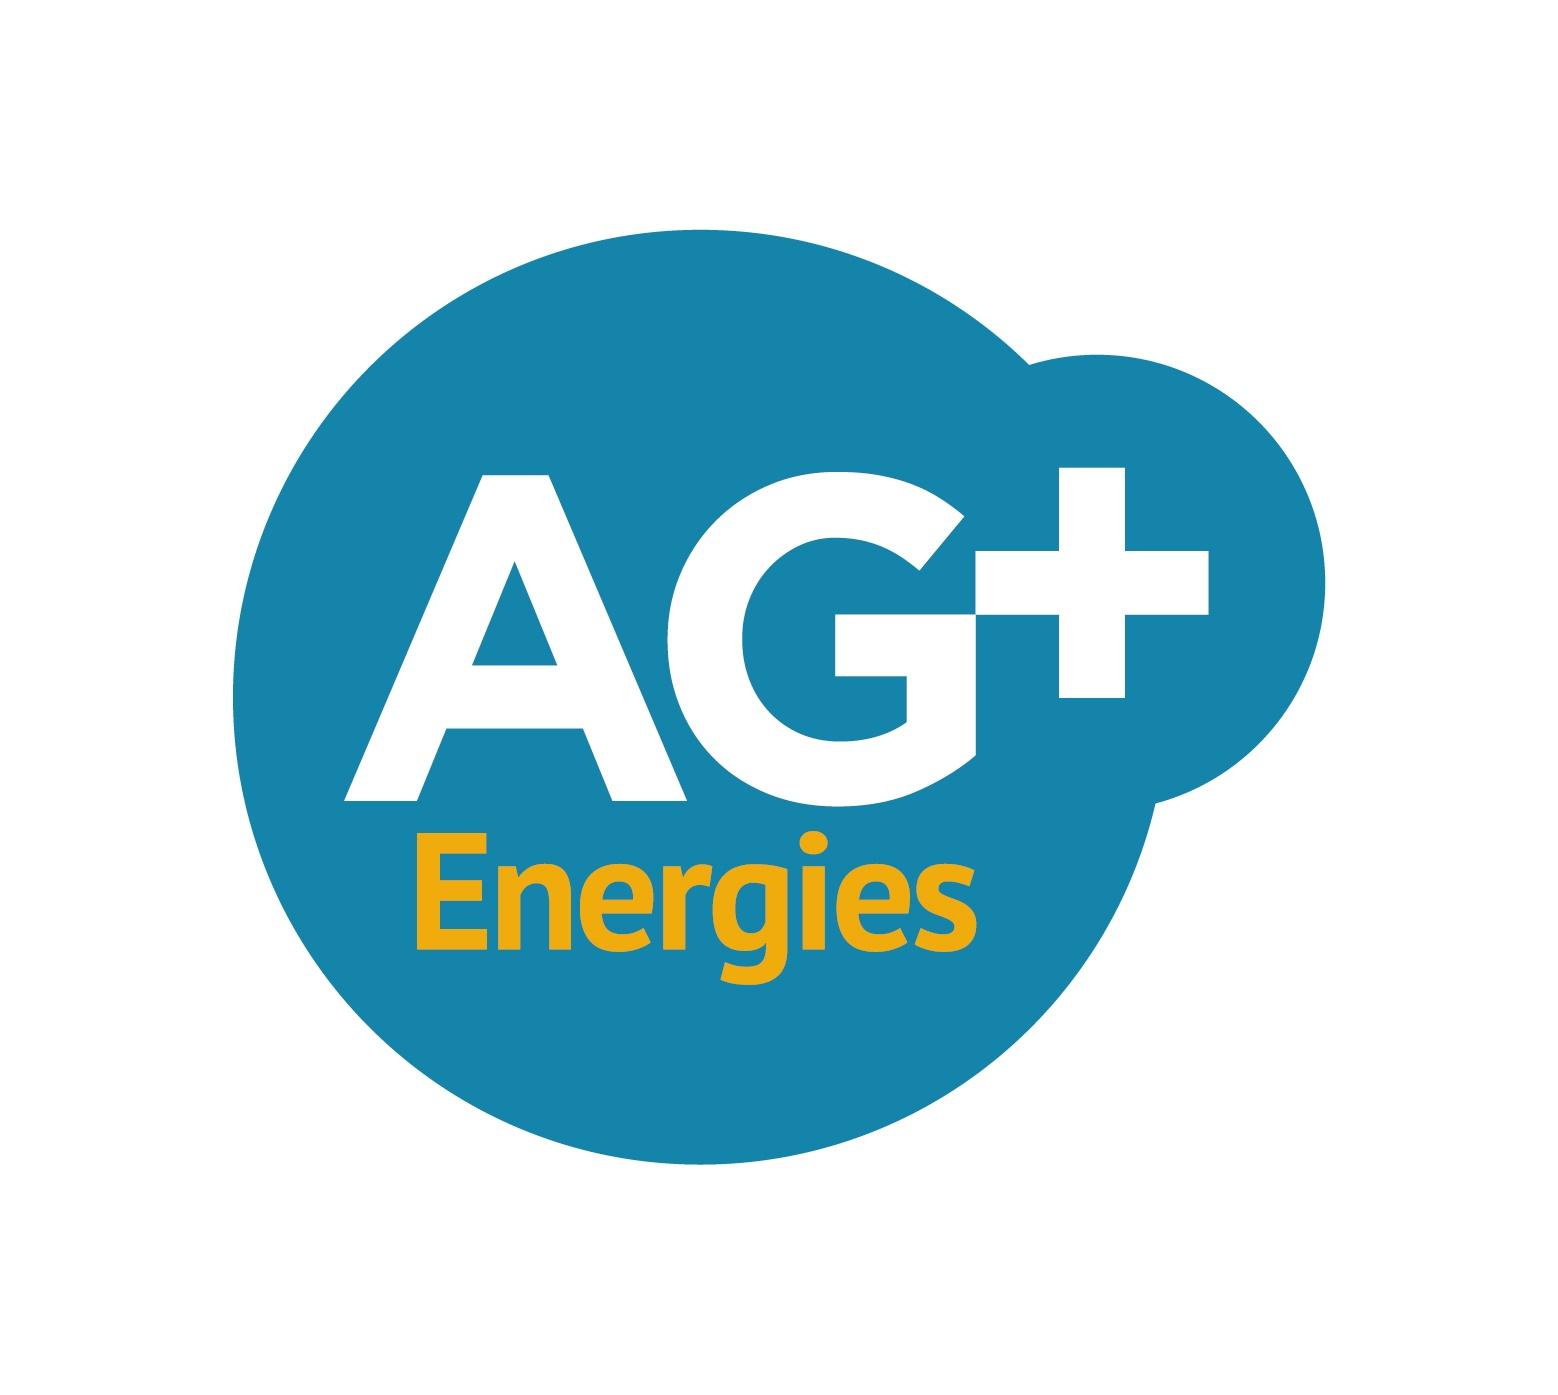 Ag+ Energies - Toulon La Crau